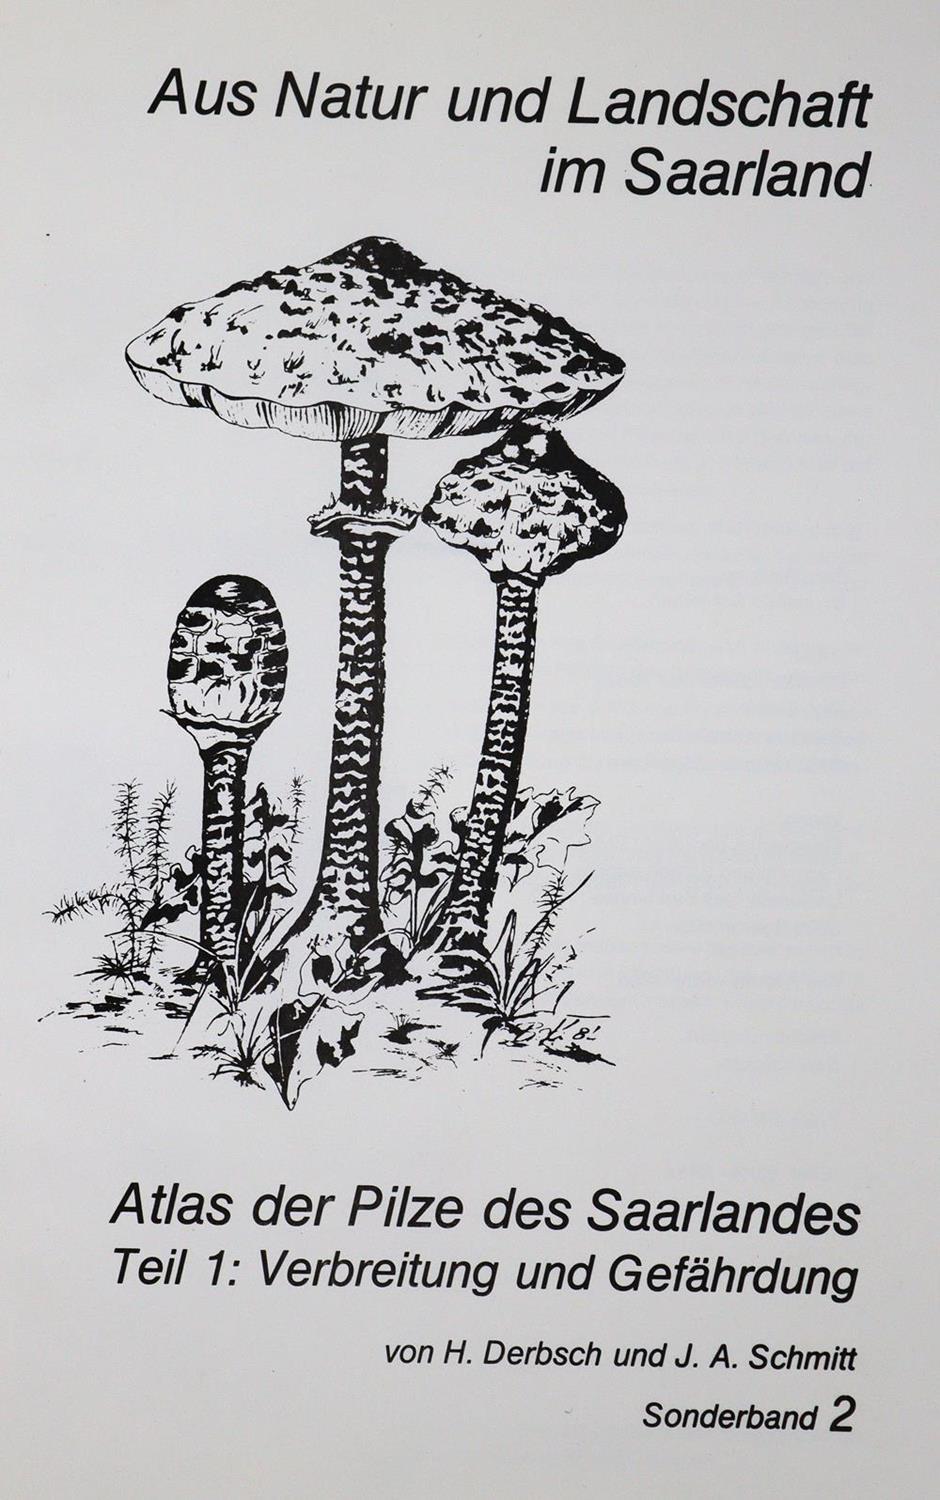 Pilze Mitteleuropas., Die. | Bild Nr.4